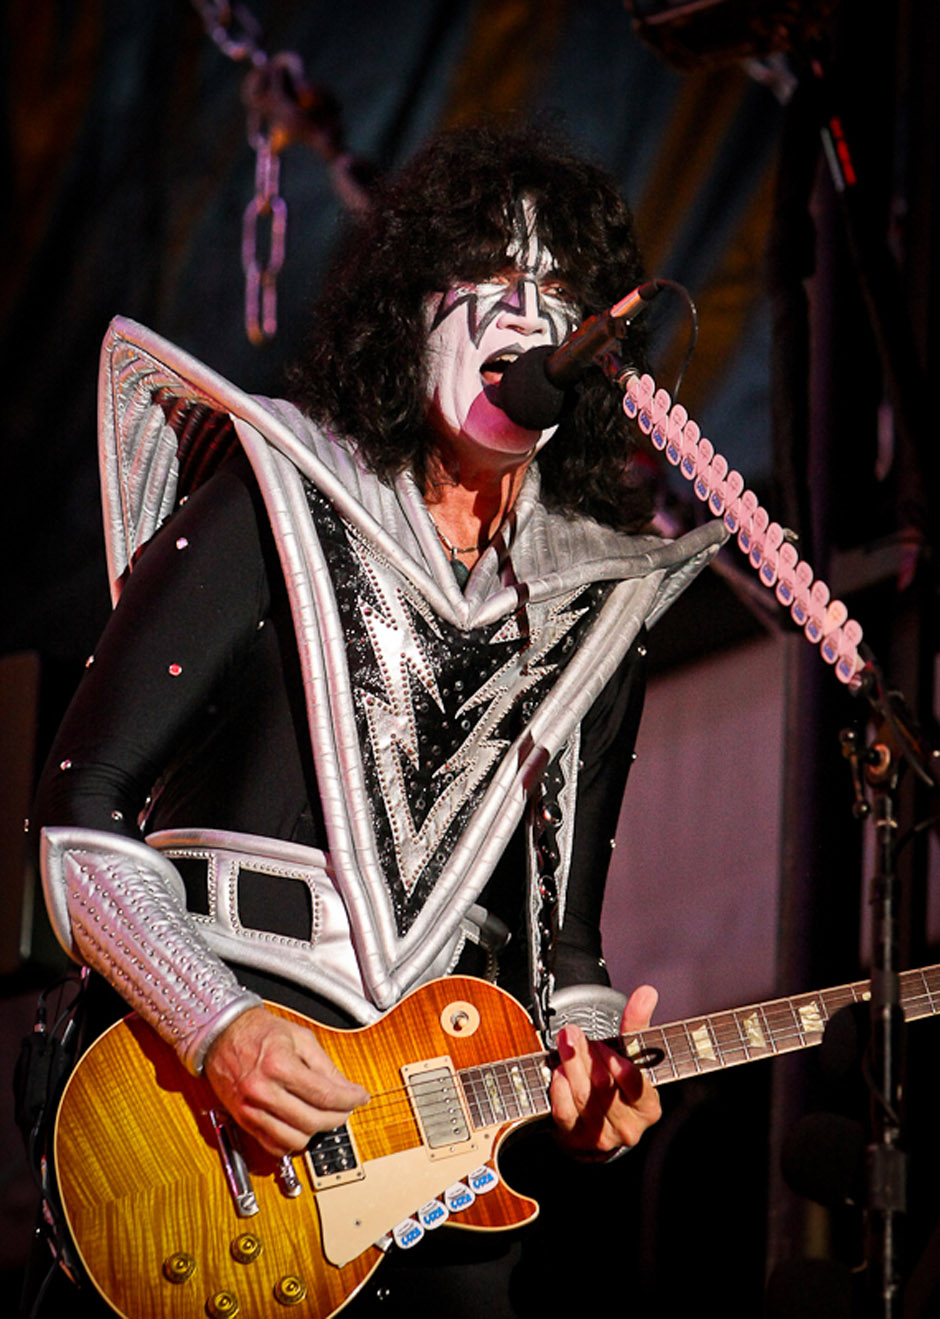 Kiss live, Nova Rock 2013